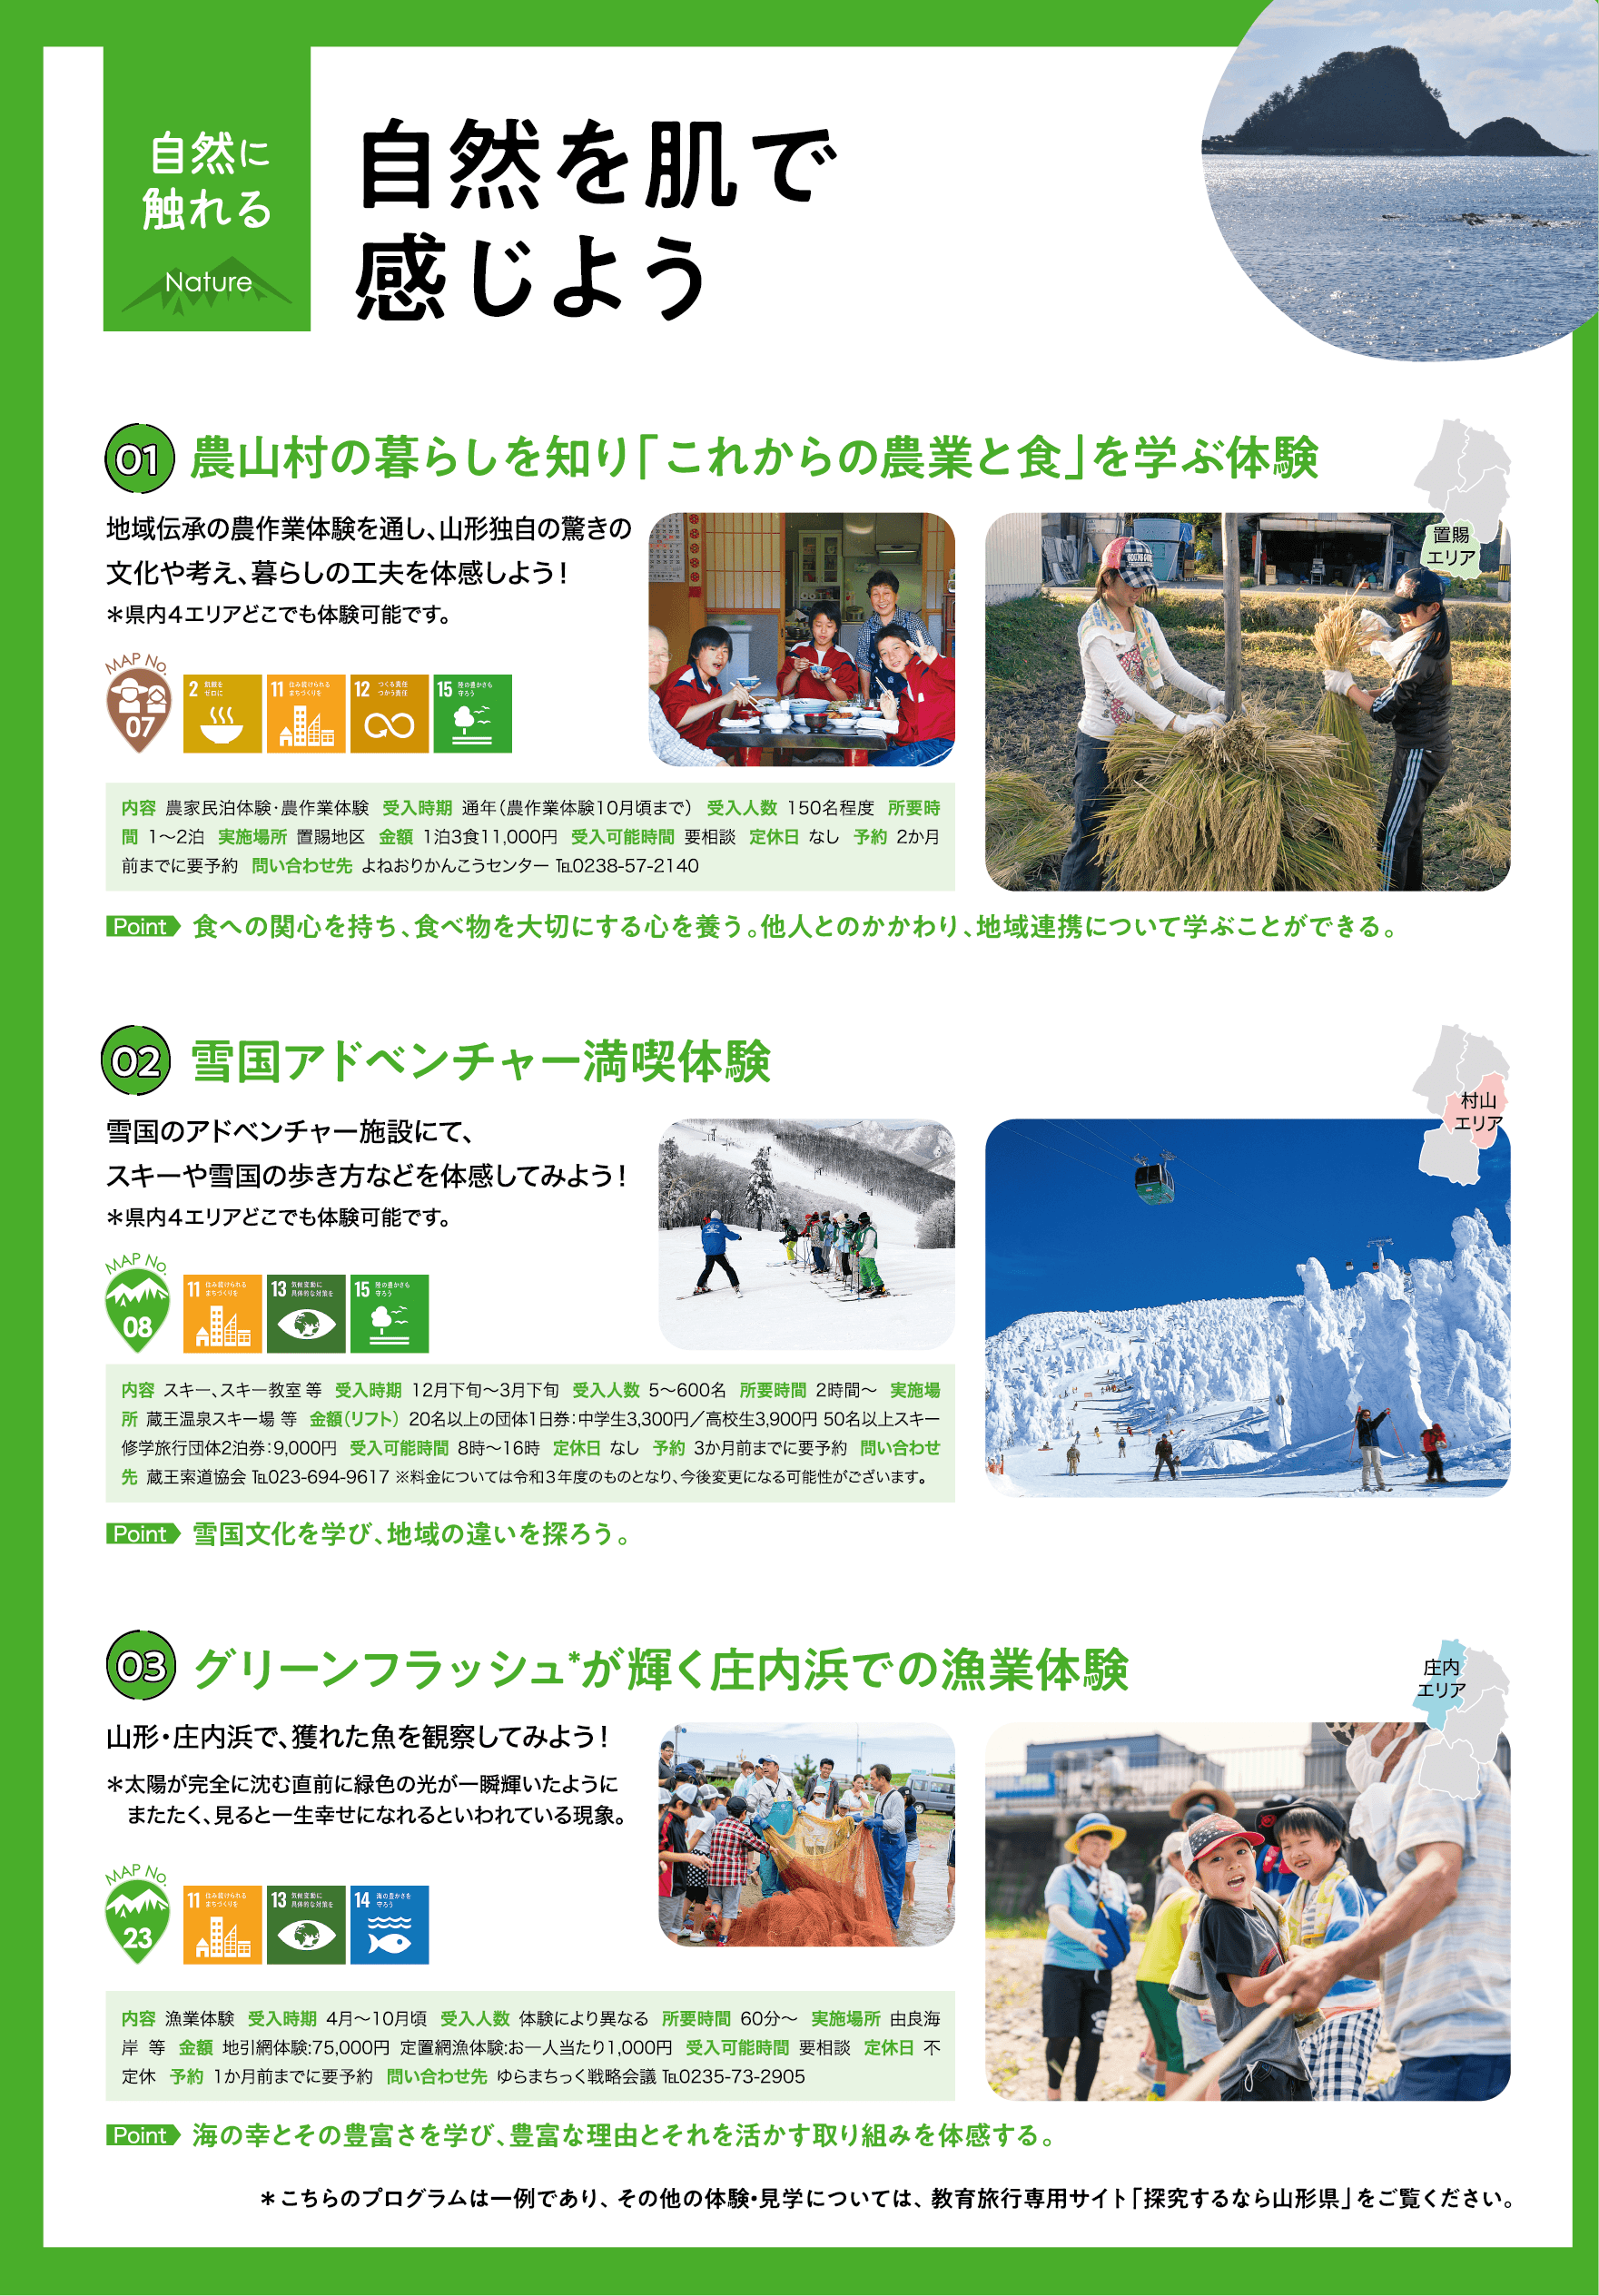 山形県探究マップ
パンフレット